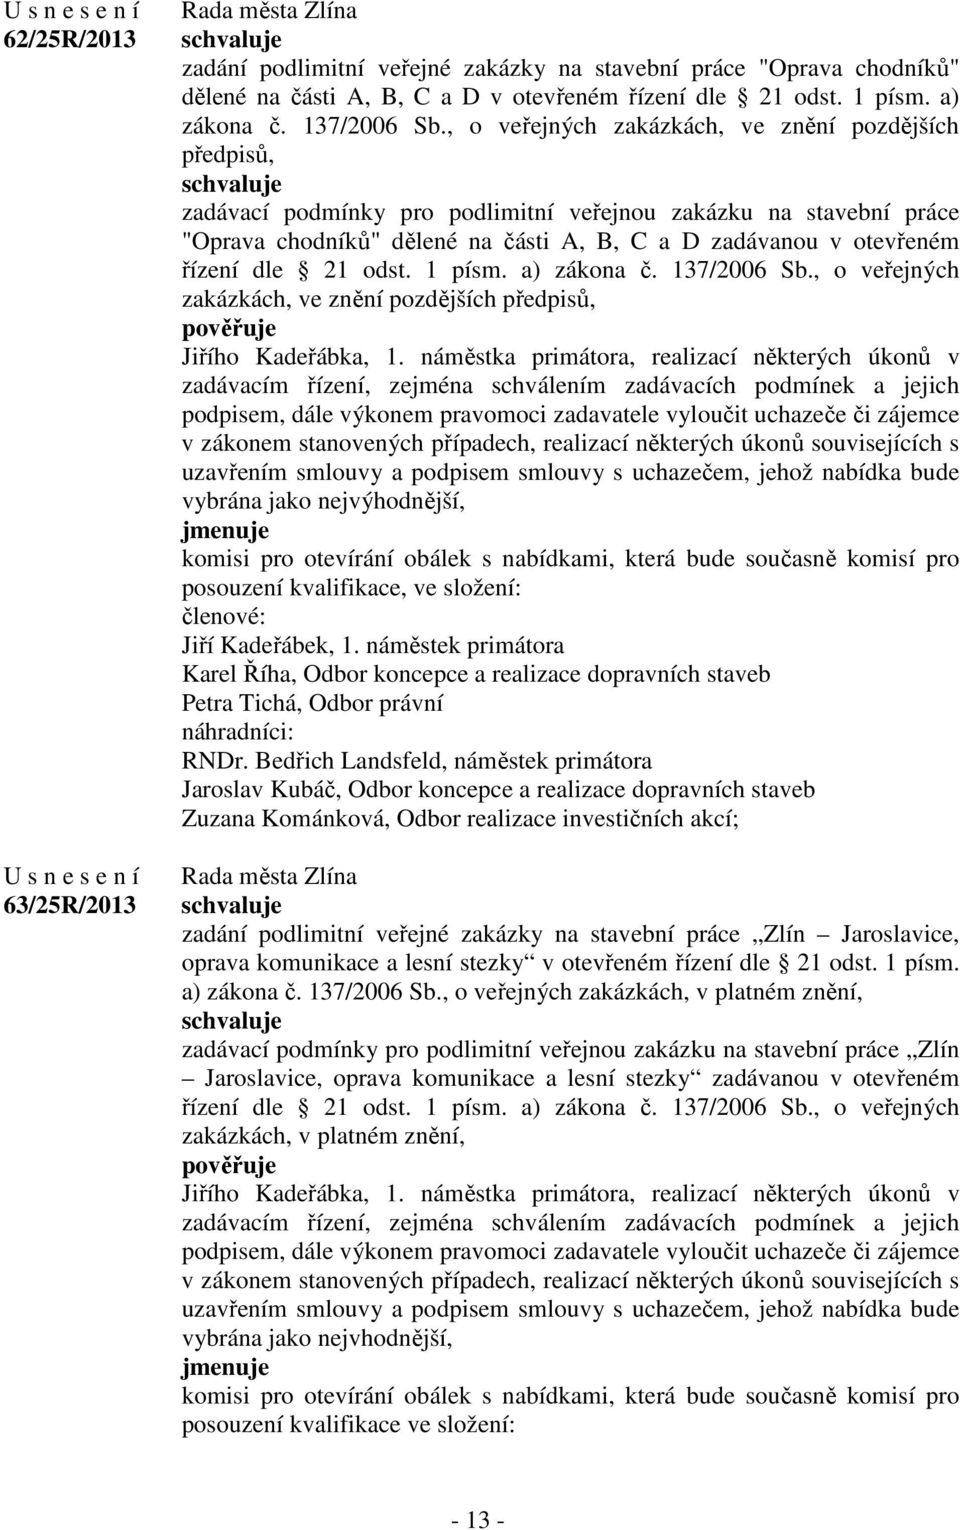 dle 21 odst. 1 písm. a) zákona č. 137/2006 Sb., o veřejných zakázkách, ve znění pozdějších předpisů, Jiřího Kadeřábka, 1.